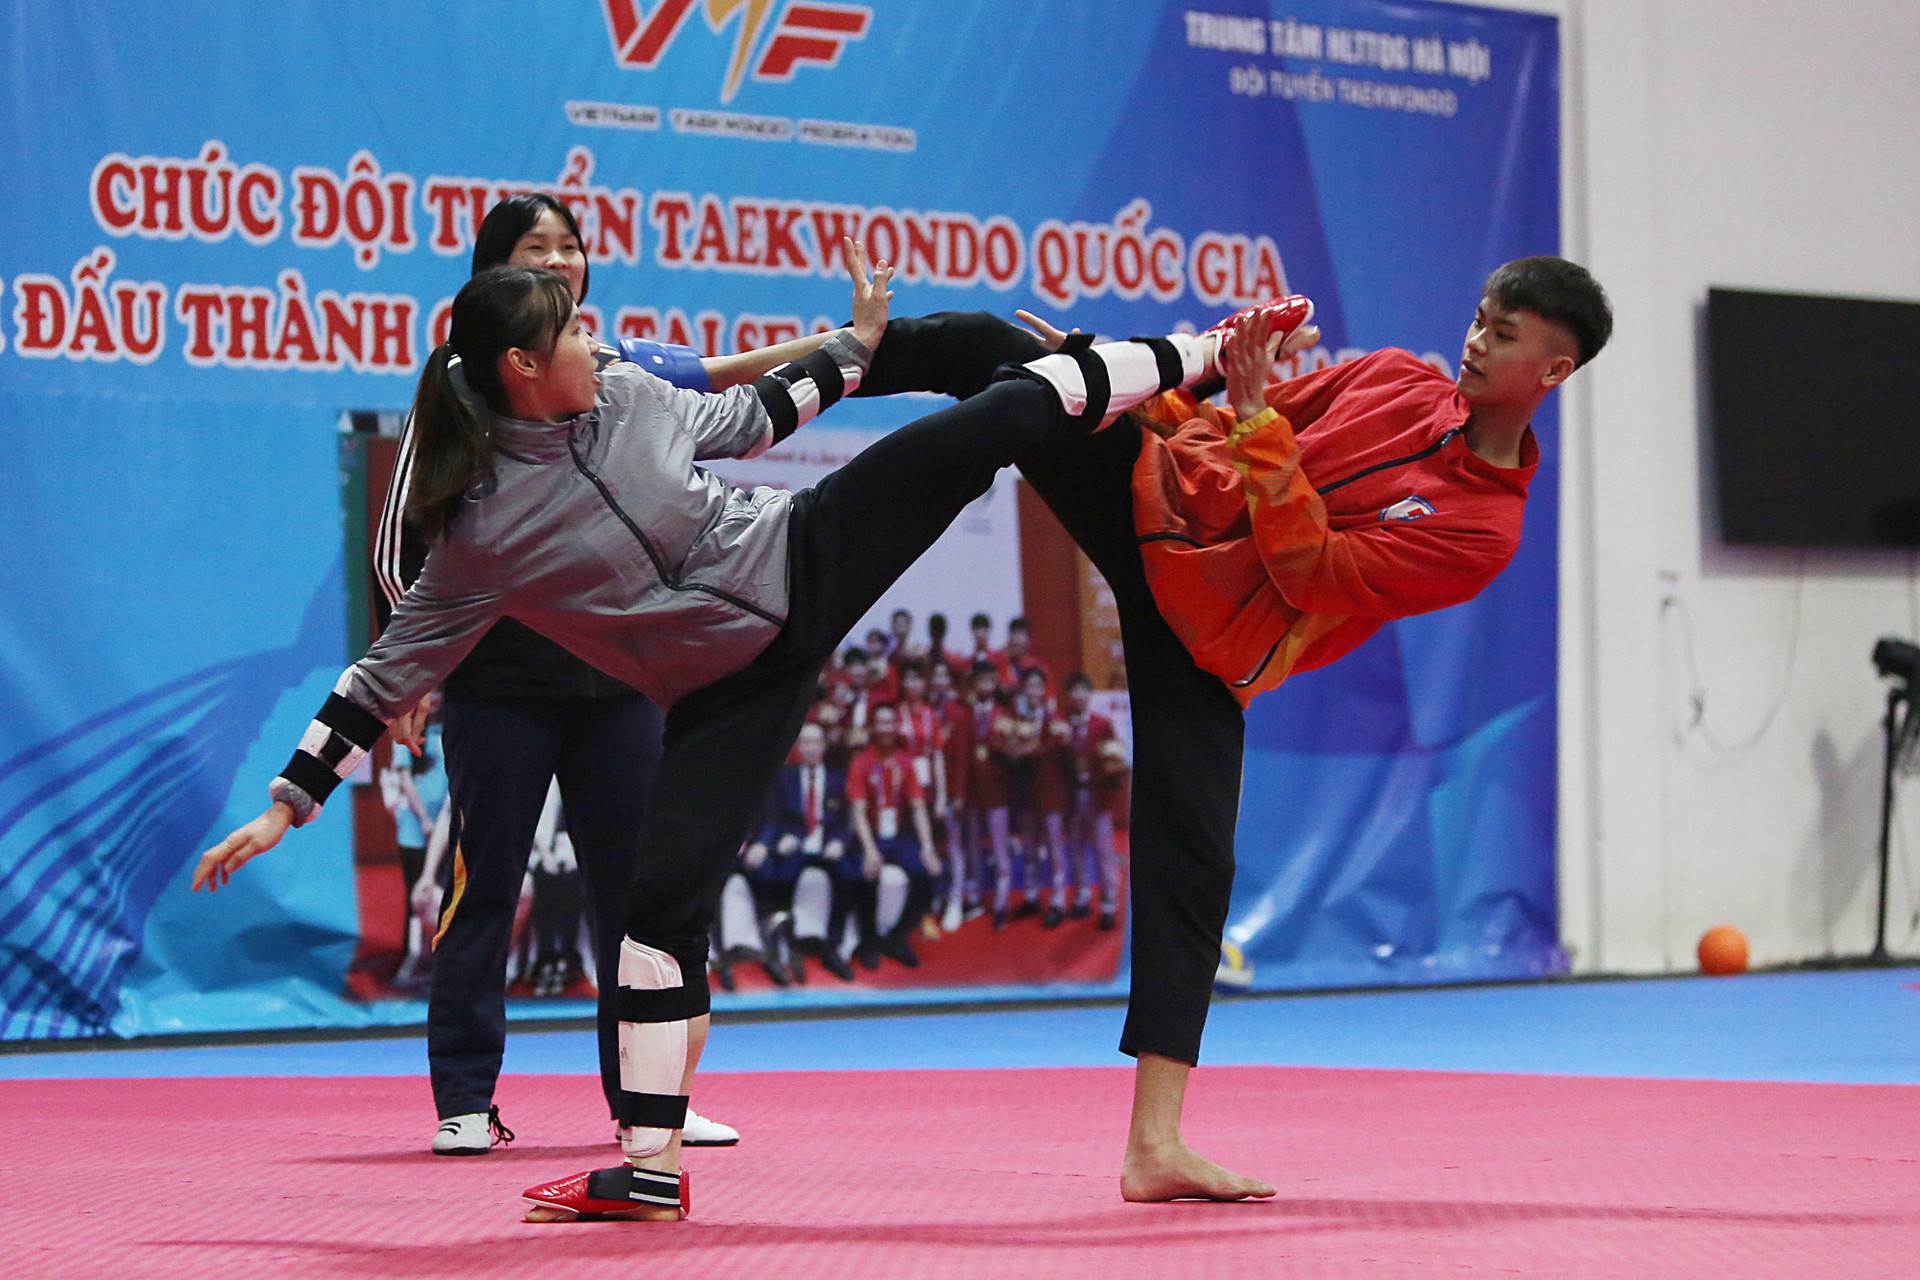 Võ sĩ taekwondo Trương Thị Kim Tuyền (bìa trái) và các đồng đội đang tích cực chuẩn bị cho vòng loại Olympic, với hy vọng giành suất đến Olympic Paris 2024 - Ảnh: HOÀNG TÙNG